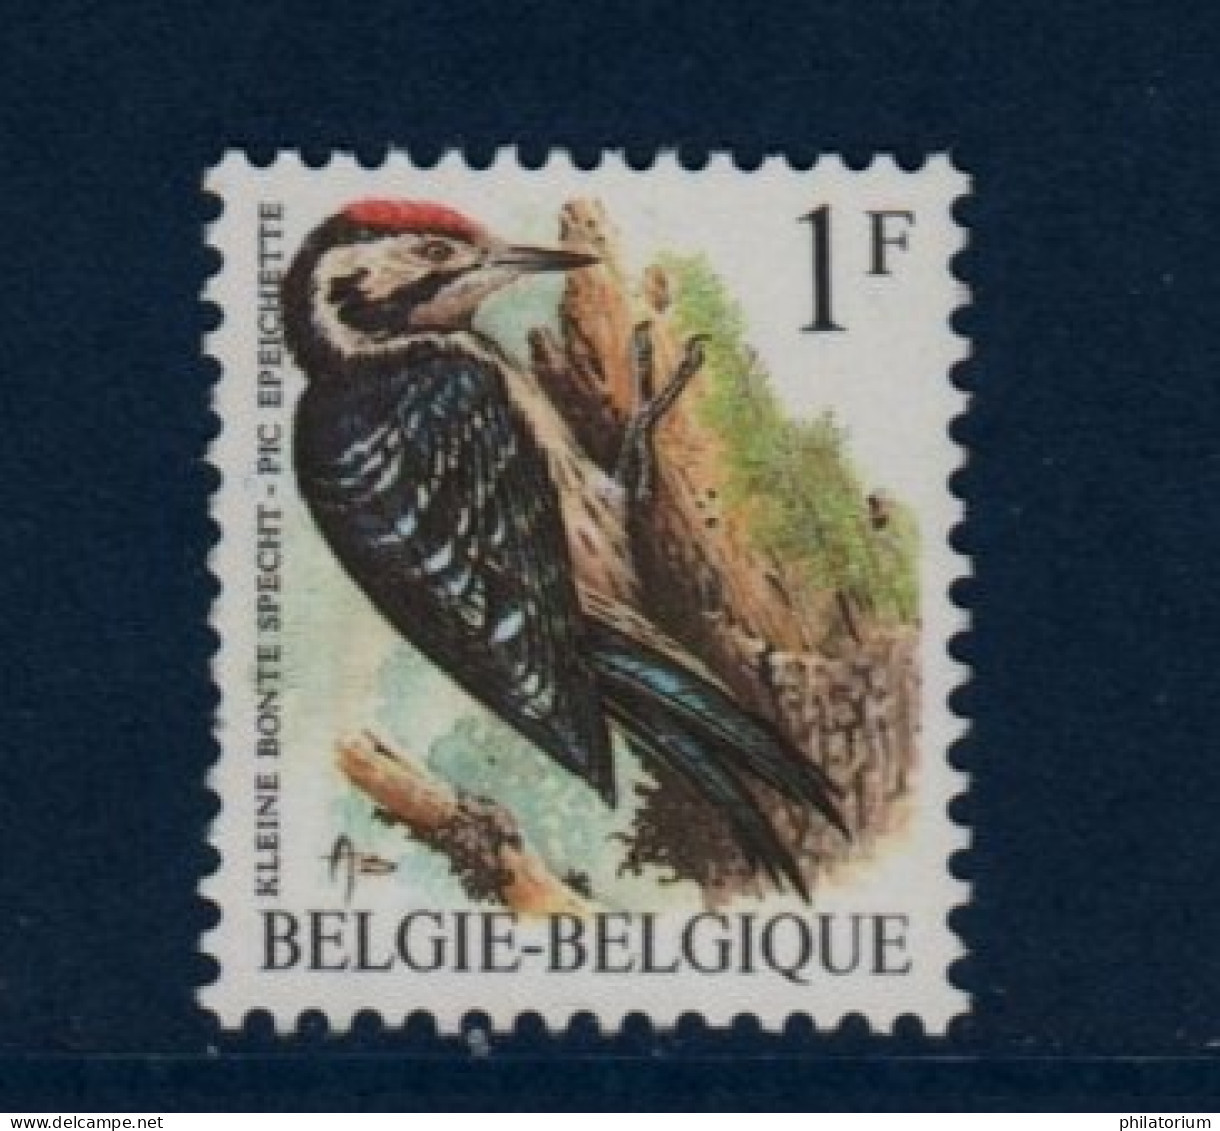 Belgique België, **, Yv 2349, Mi 2401x, SG 2845, Pic épeichette, - 1985-.. Vögel (Buzin)